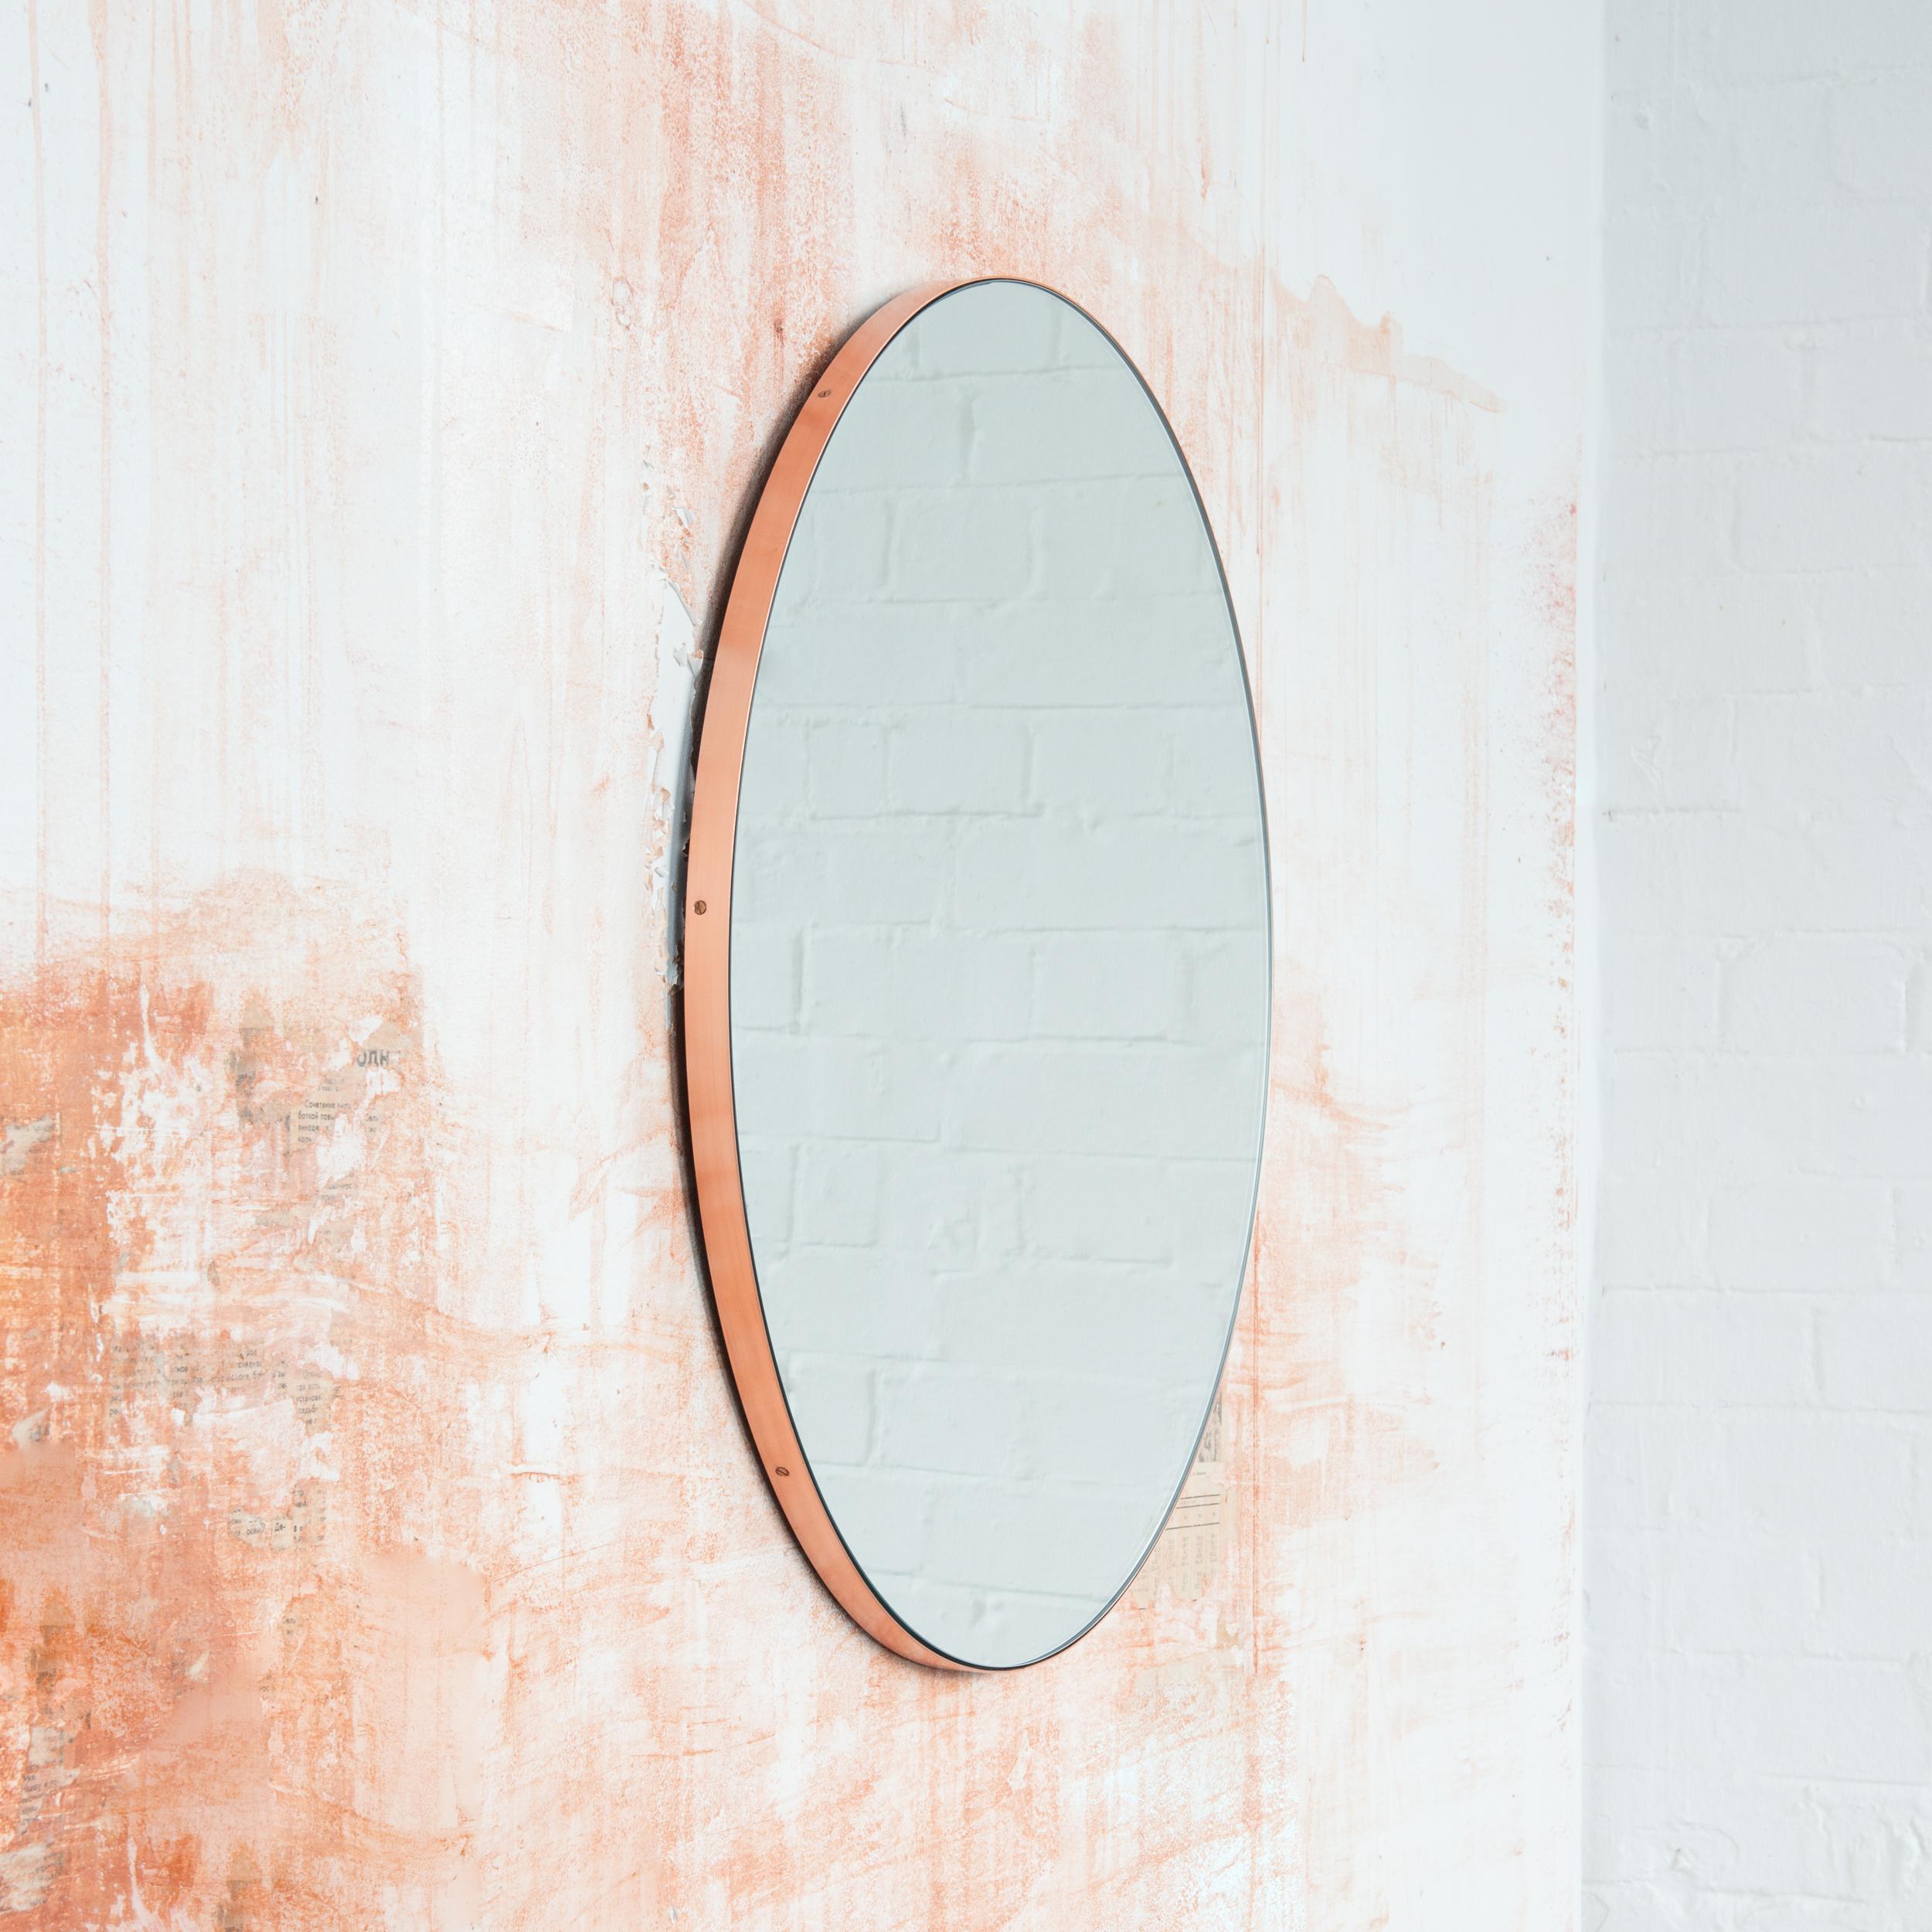 Miroir rond minimaliste avec un élégant cadre en cuivre brossé. Les détails et la finition, y compris les vis cuivrées visibles, soulignent l'aspect artisanal et la qualité du miroir, véritable signature de notre marque. Conçu et fabriqué à la main